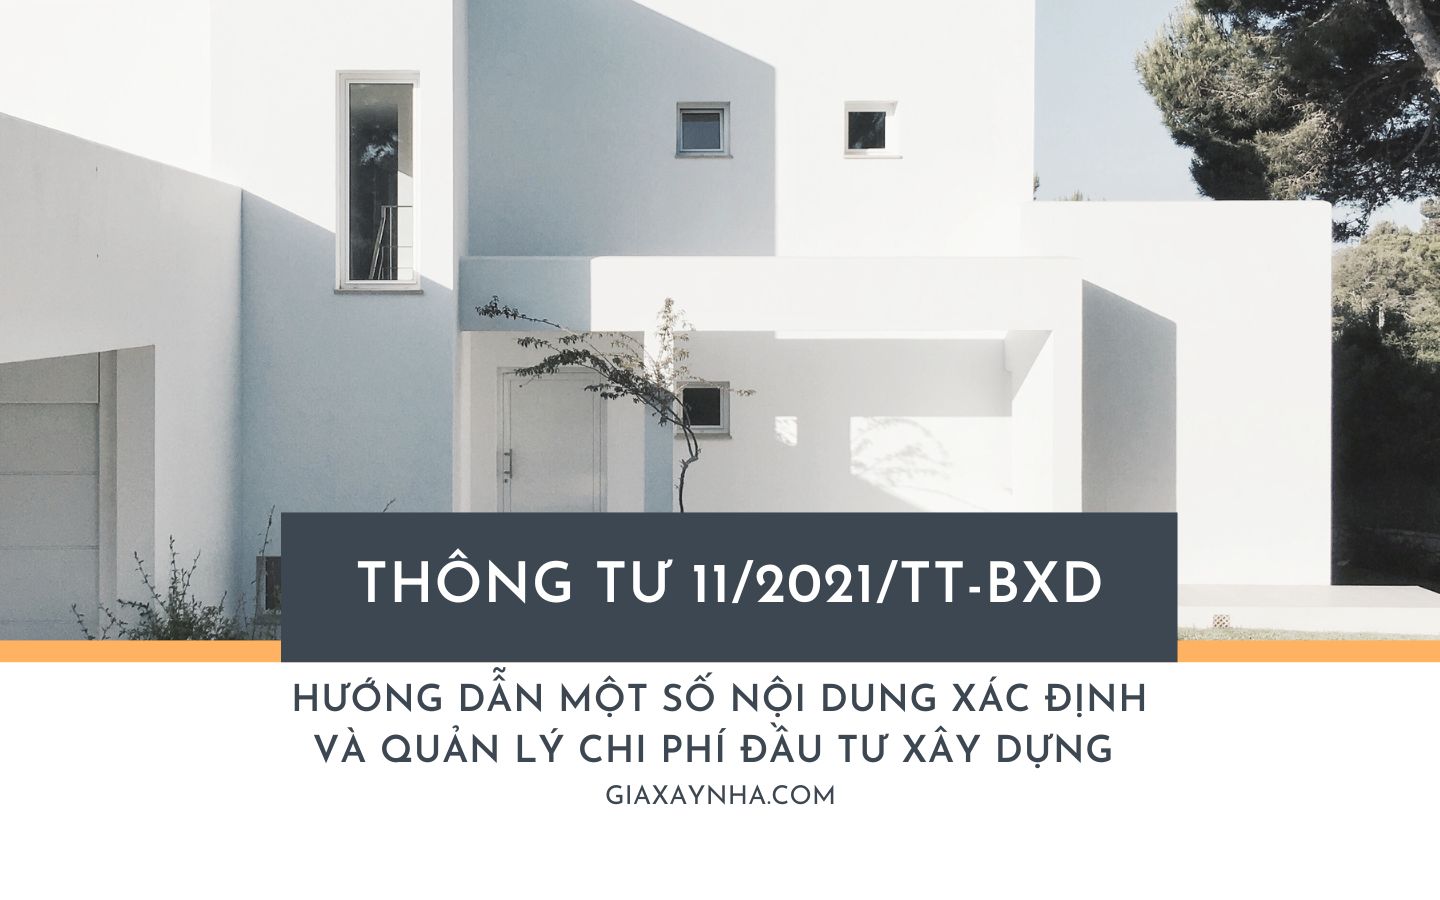 Giaxaynha Thong tu so 112021TT BXD